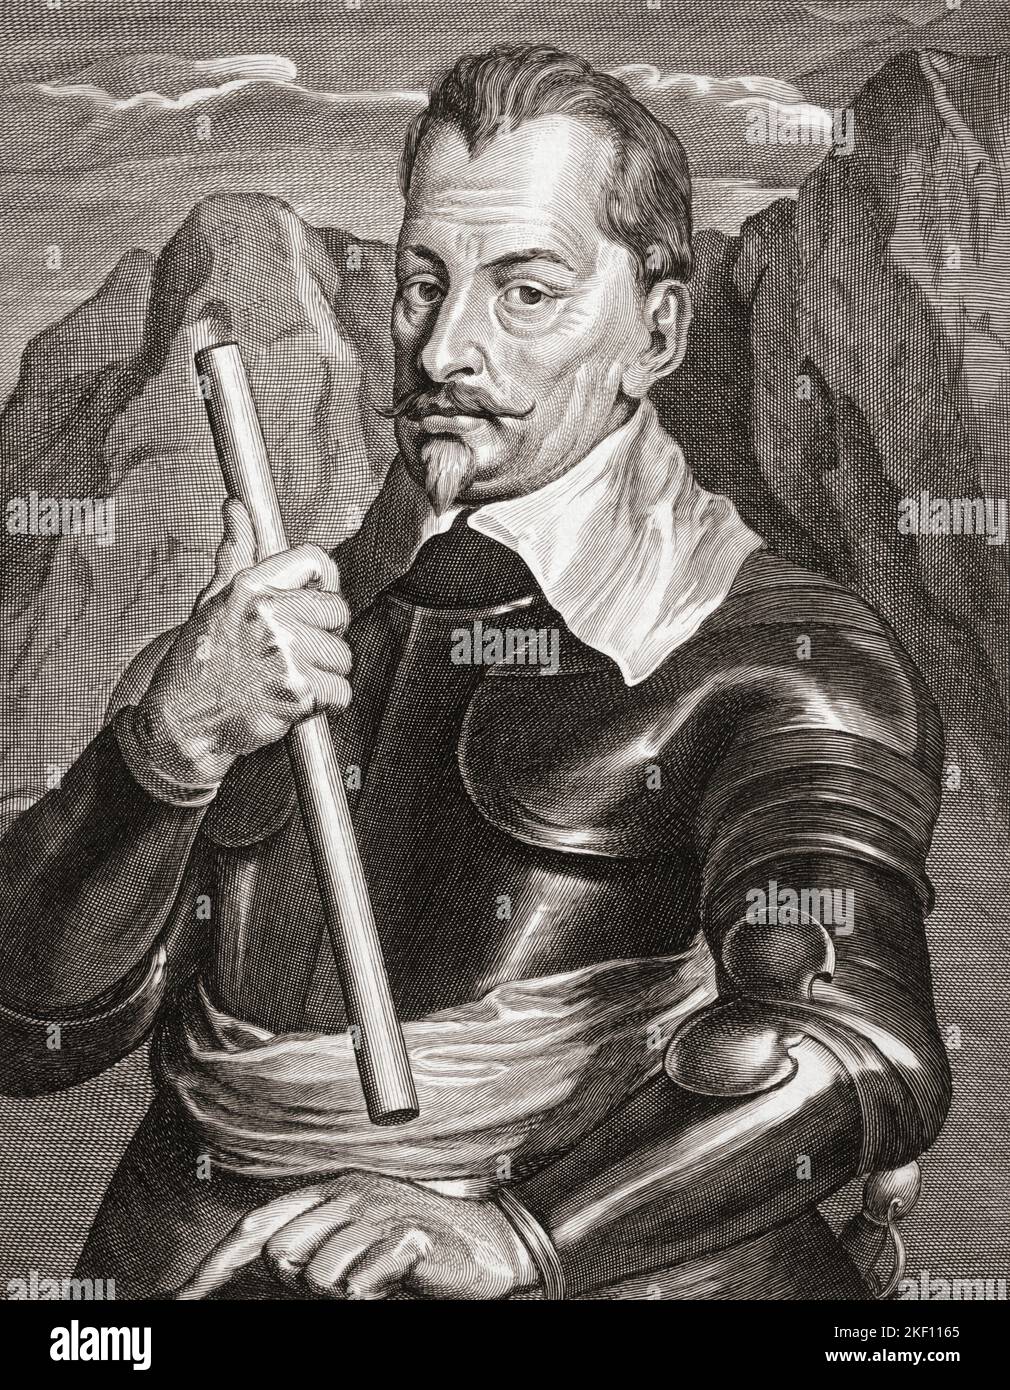 Albrecht Wenzel Eusebius von Wallenstein auch von Waldstein, 1583 – 1634. Böhmischer Militärführer und Politiker. Aus einem Druck aus dem 17.. Jahrhundert, der auf dem Gemälde von Sir Anthony van Dyck basiert. Stockfoto